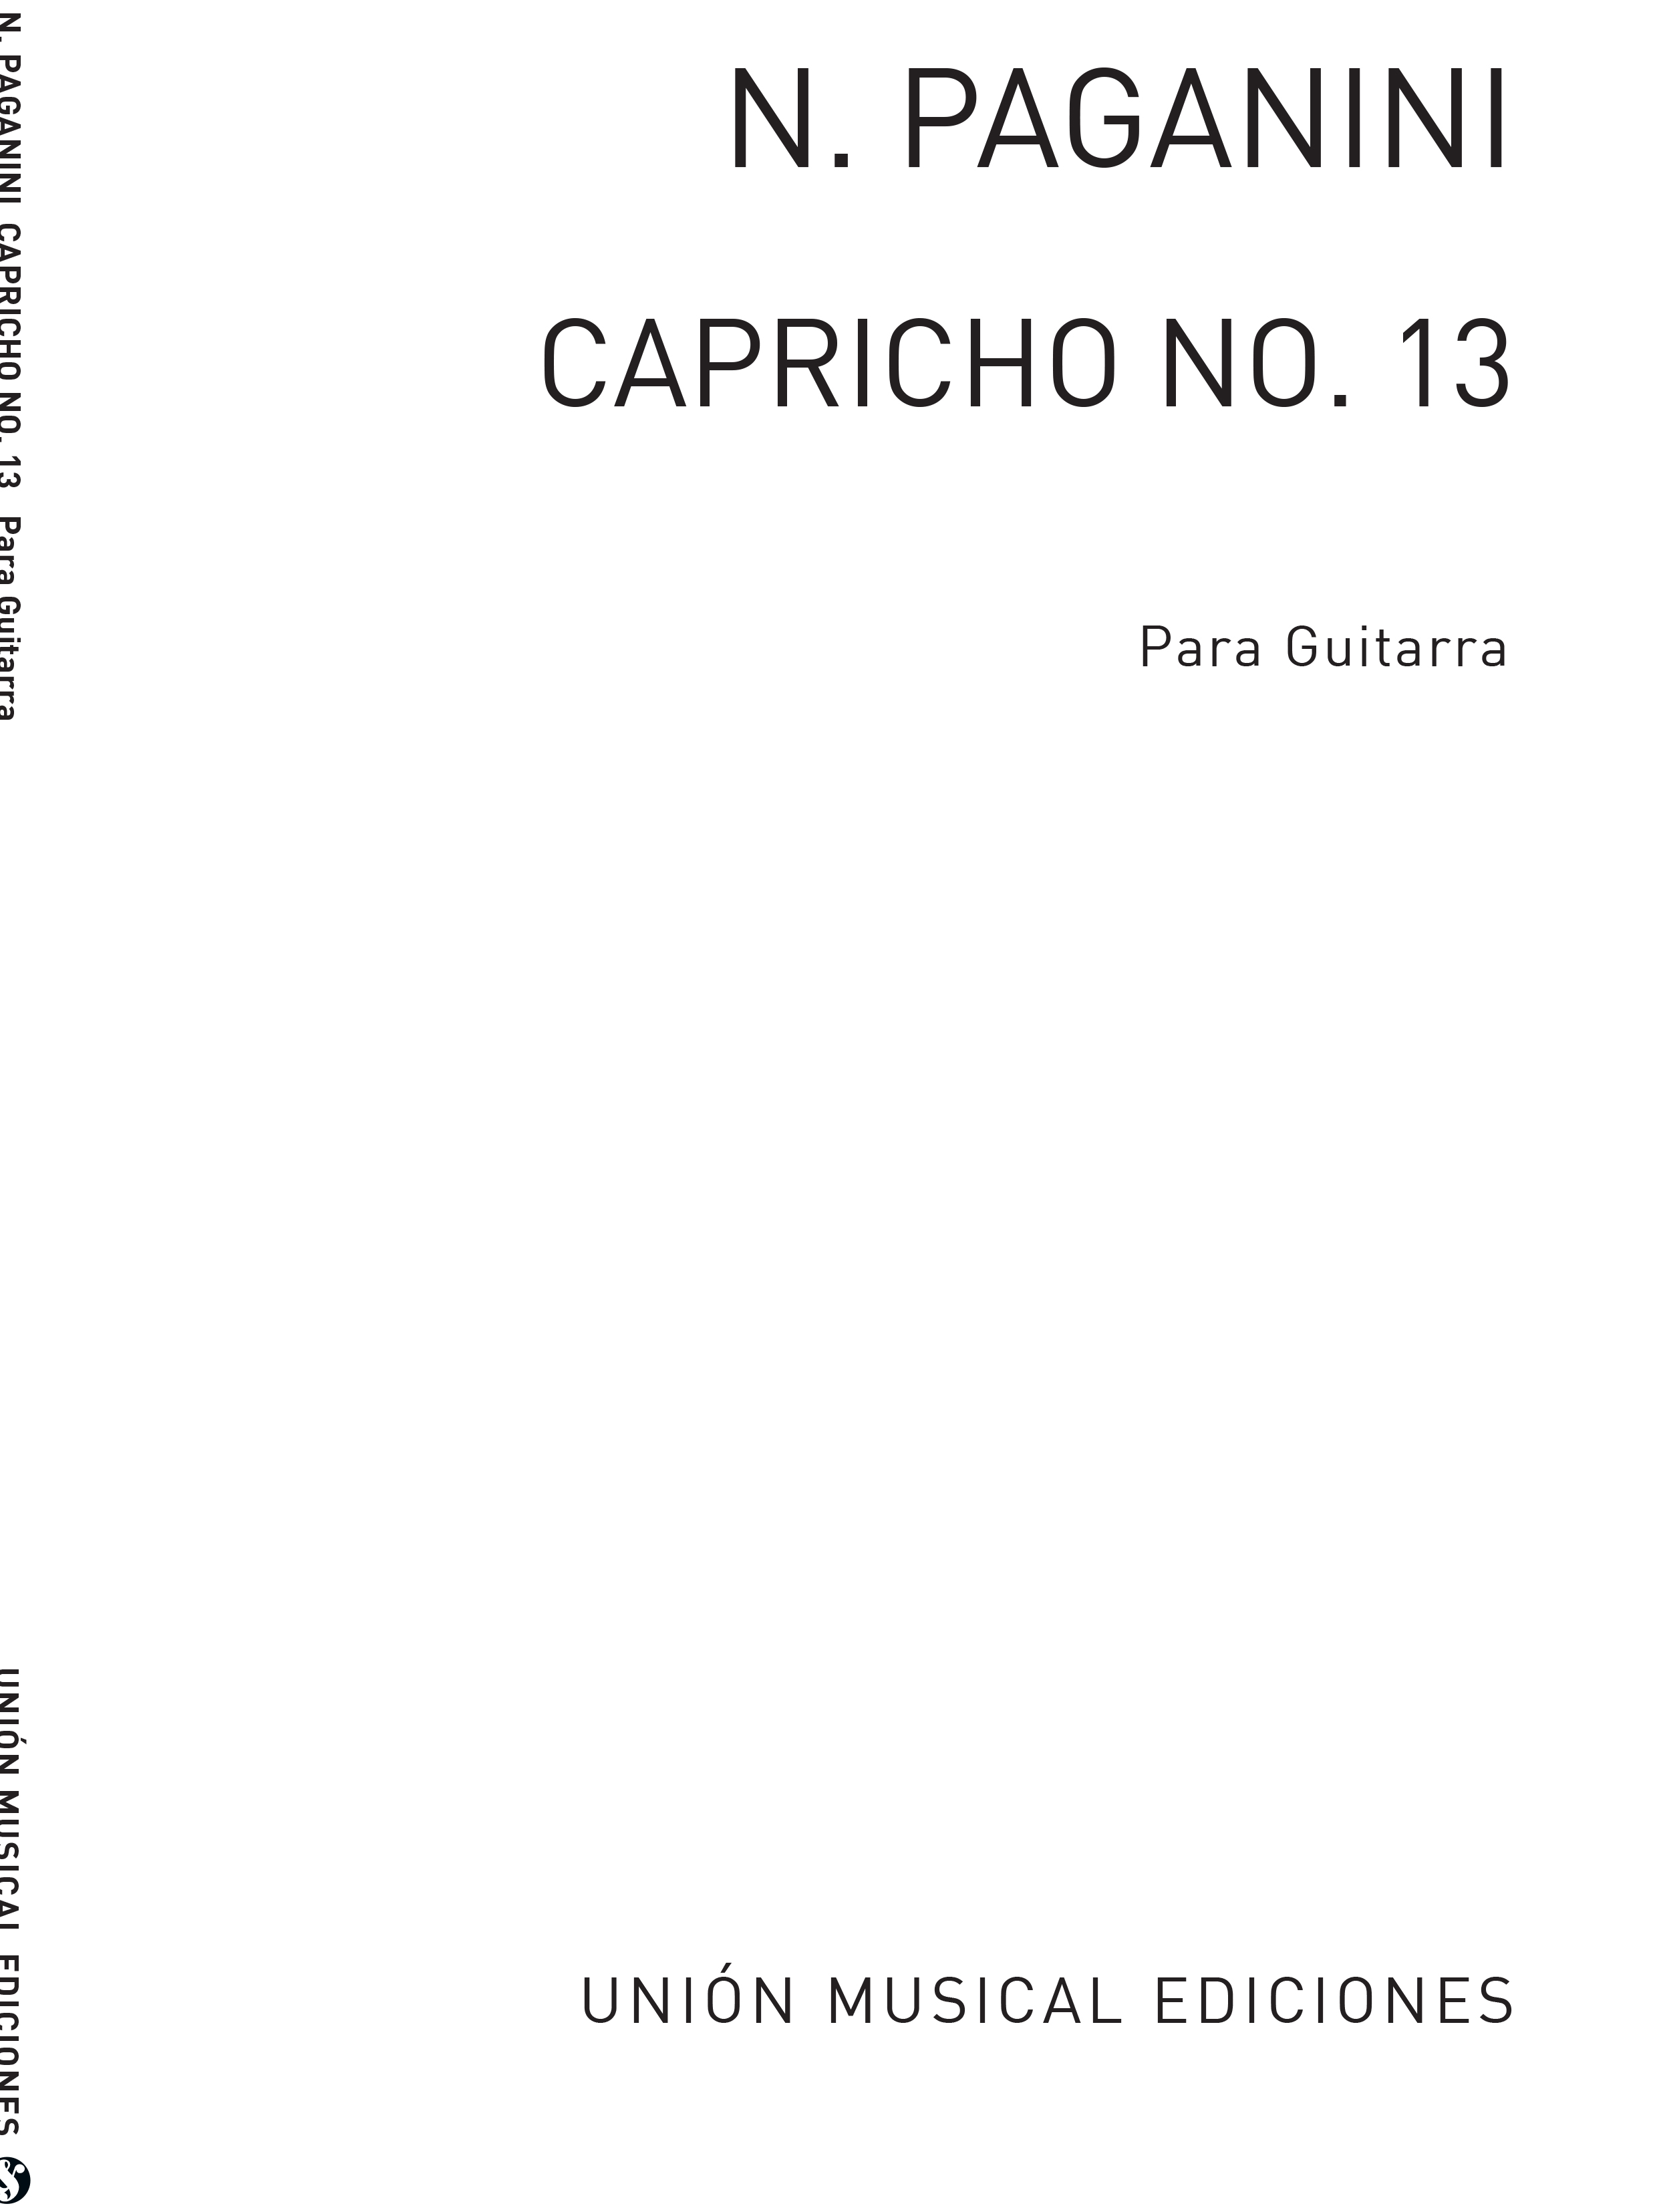 Niccolo Paganini: Caprice No.13 For Guitar